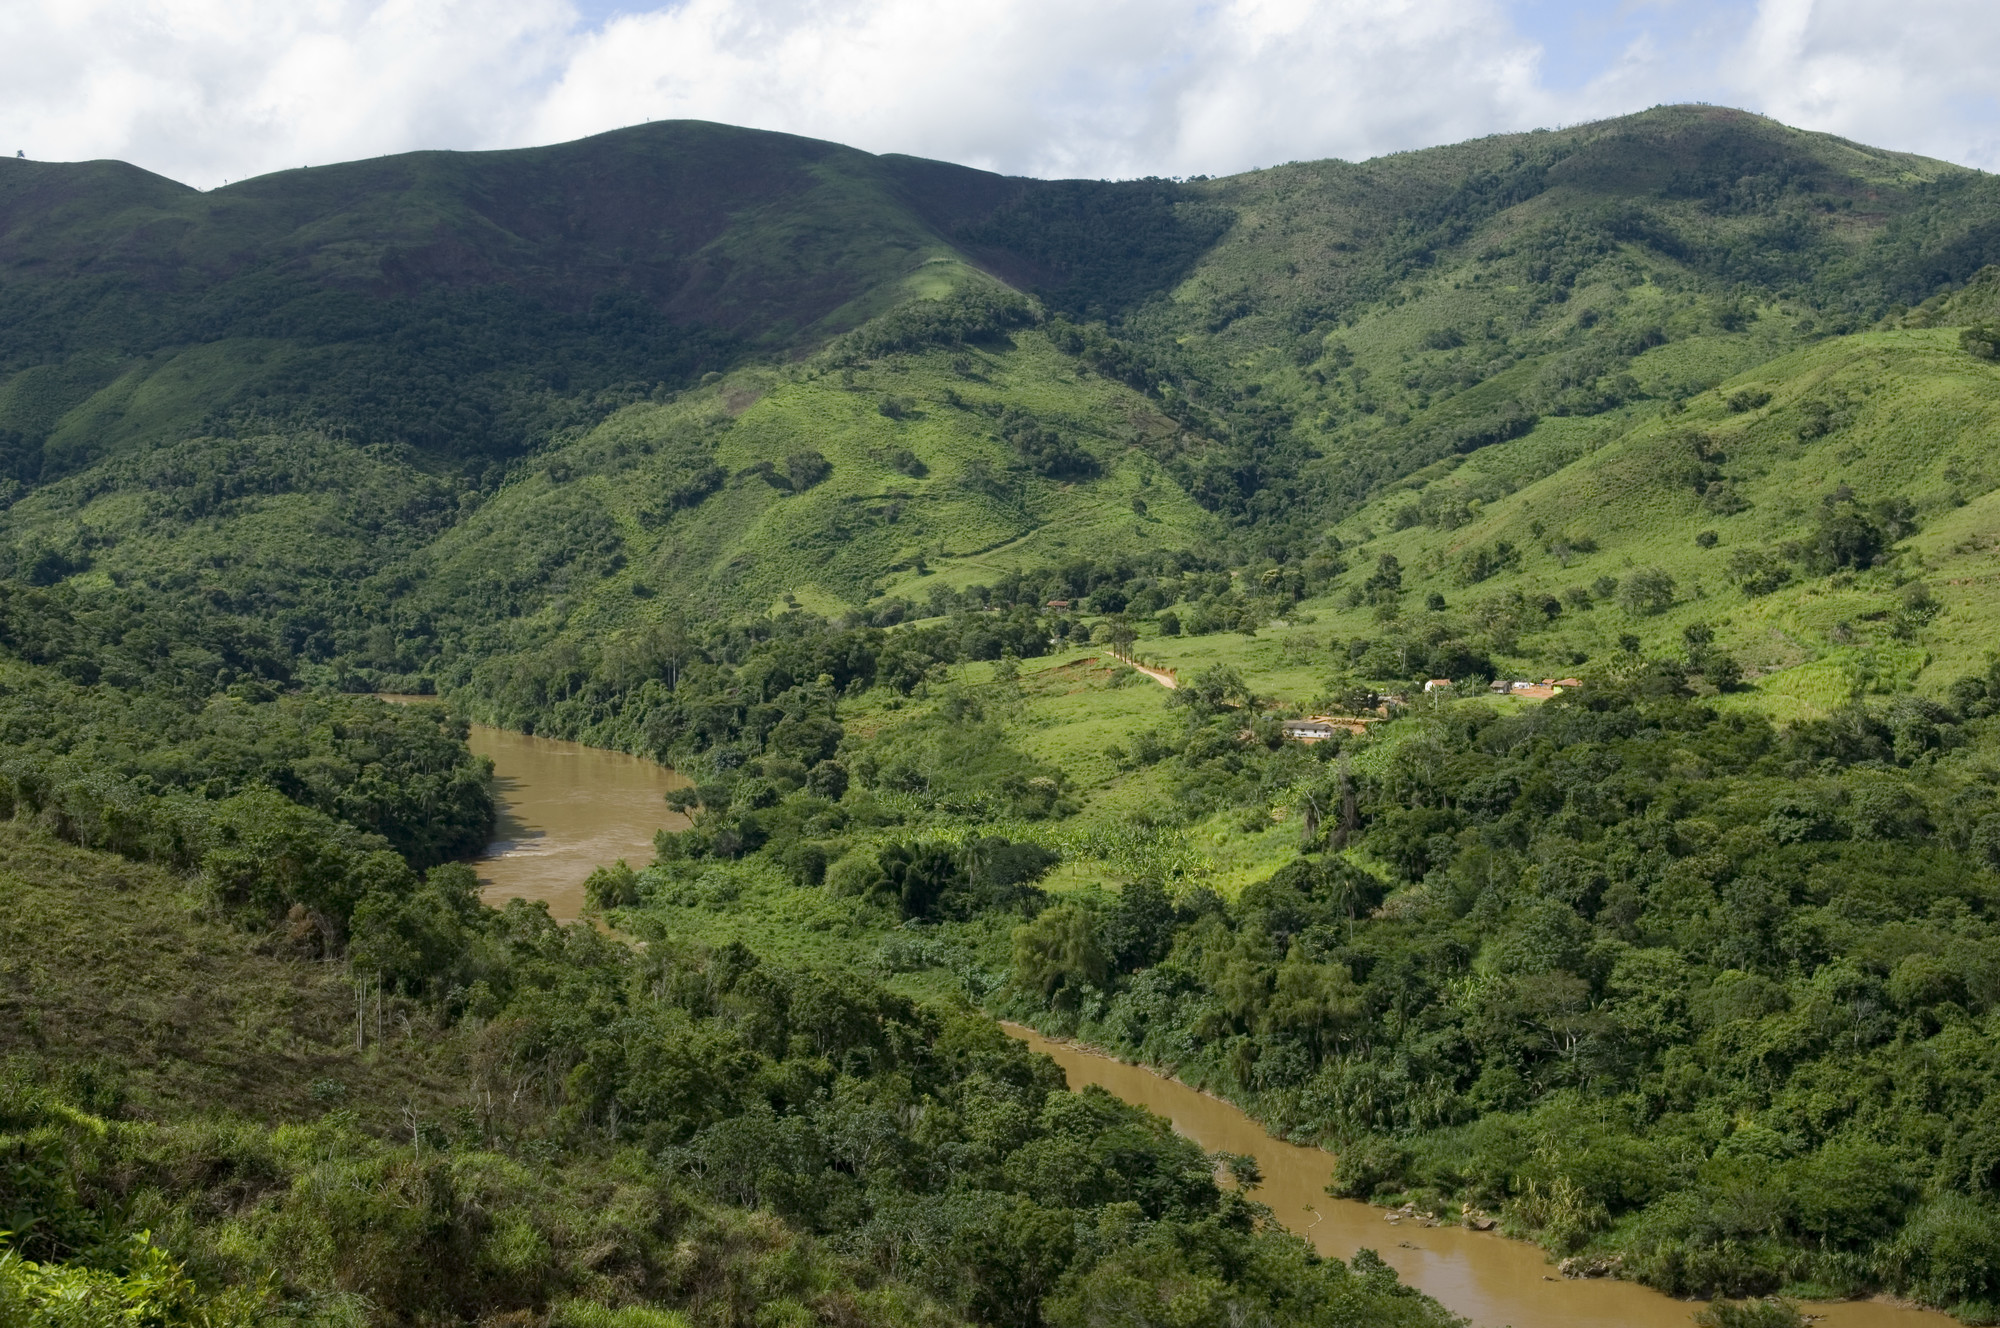 Rio RIbeira de Iguape, limite da comunidade quilombola de Porto Velho, em Iporanga, Vale do Ribeira (SP) @Felipe Leal / ISA